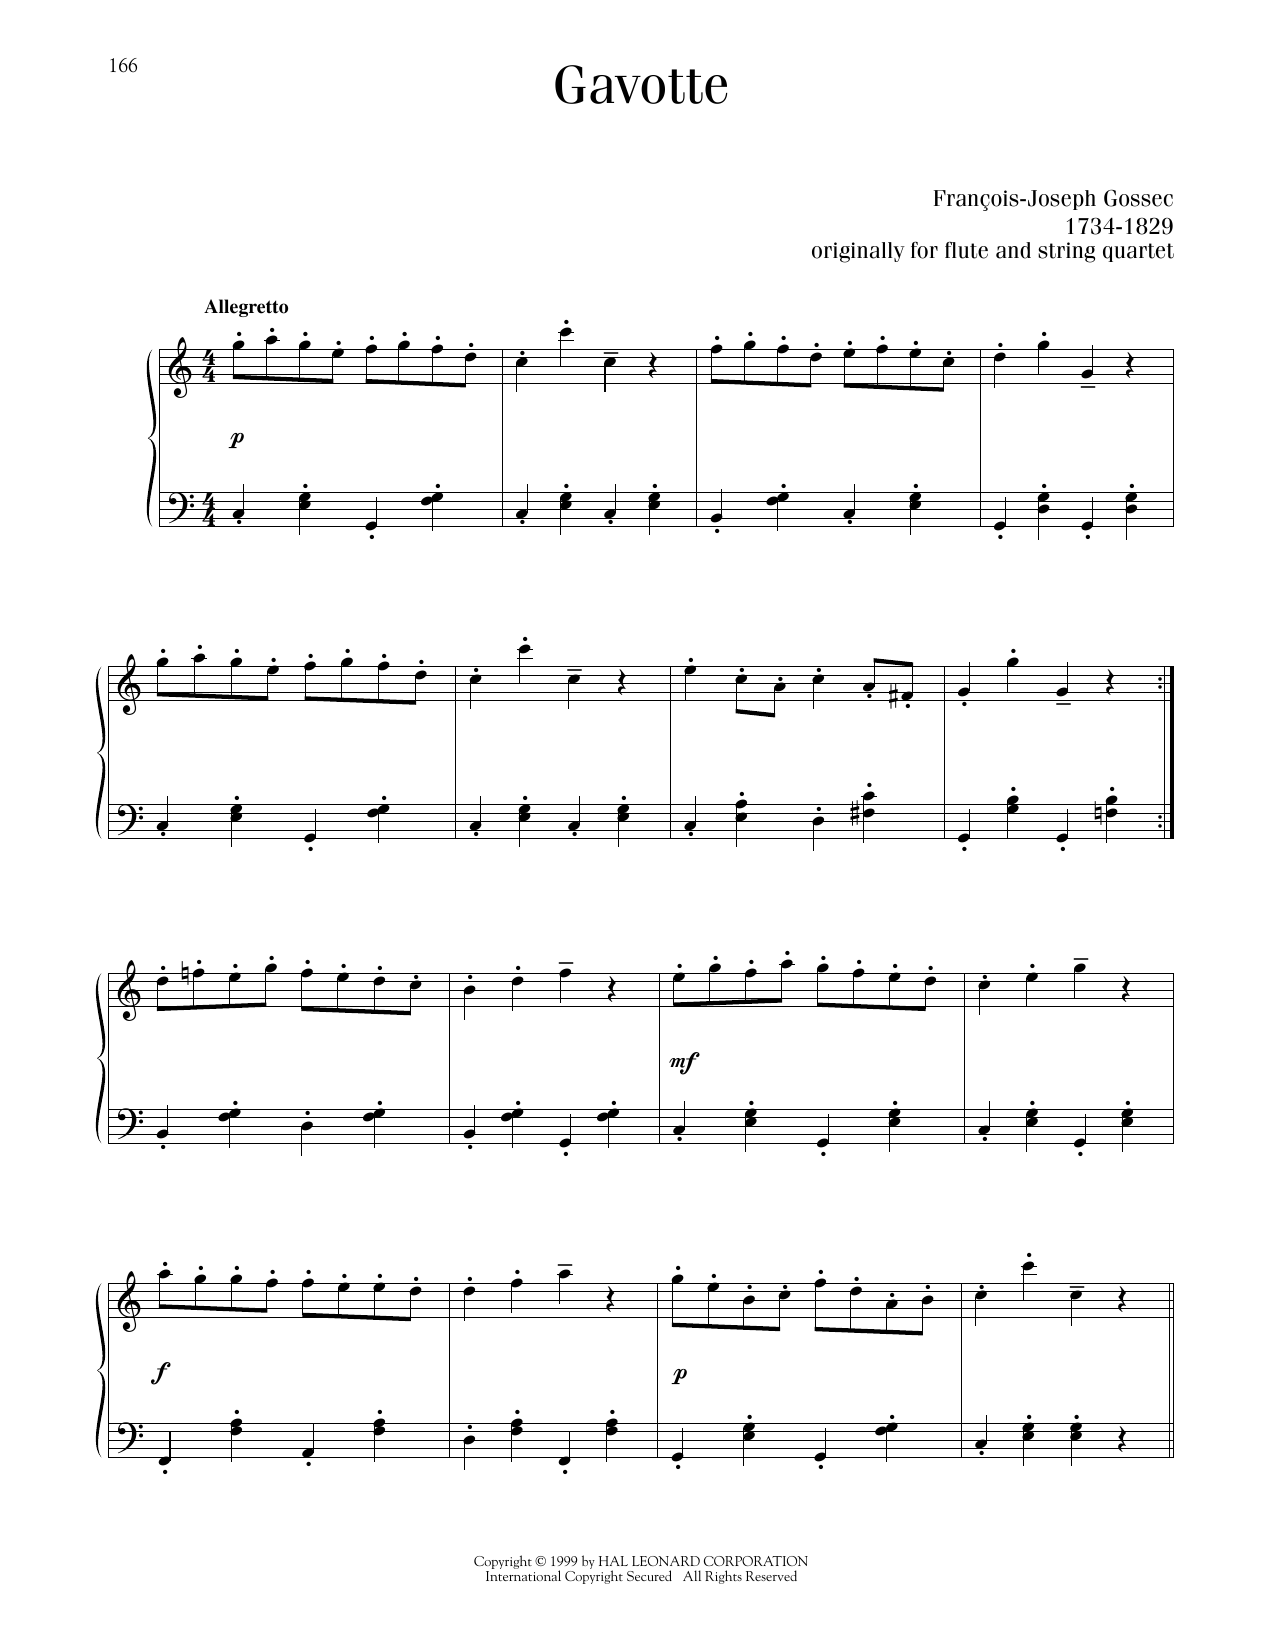 Francois-Joseph Gossec Gavotte sheet music notes printable PDF score